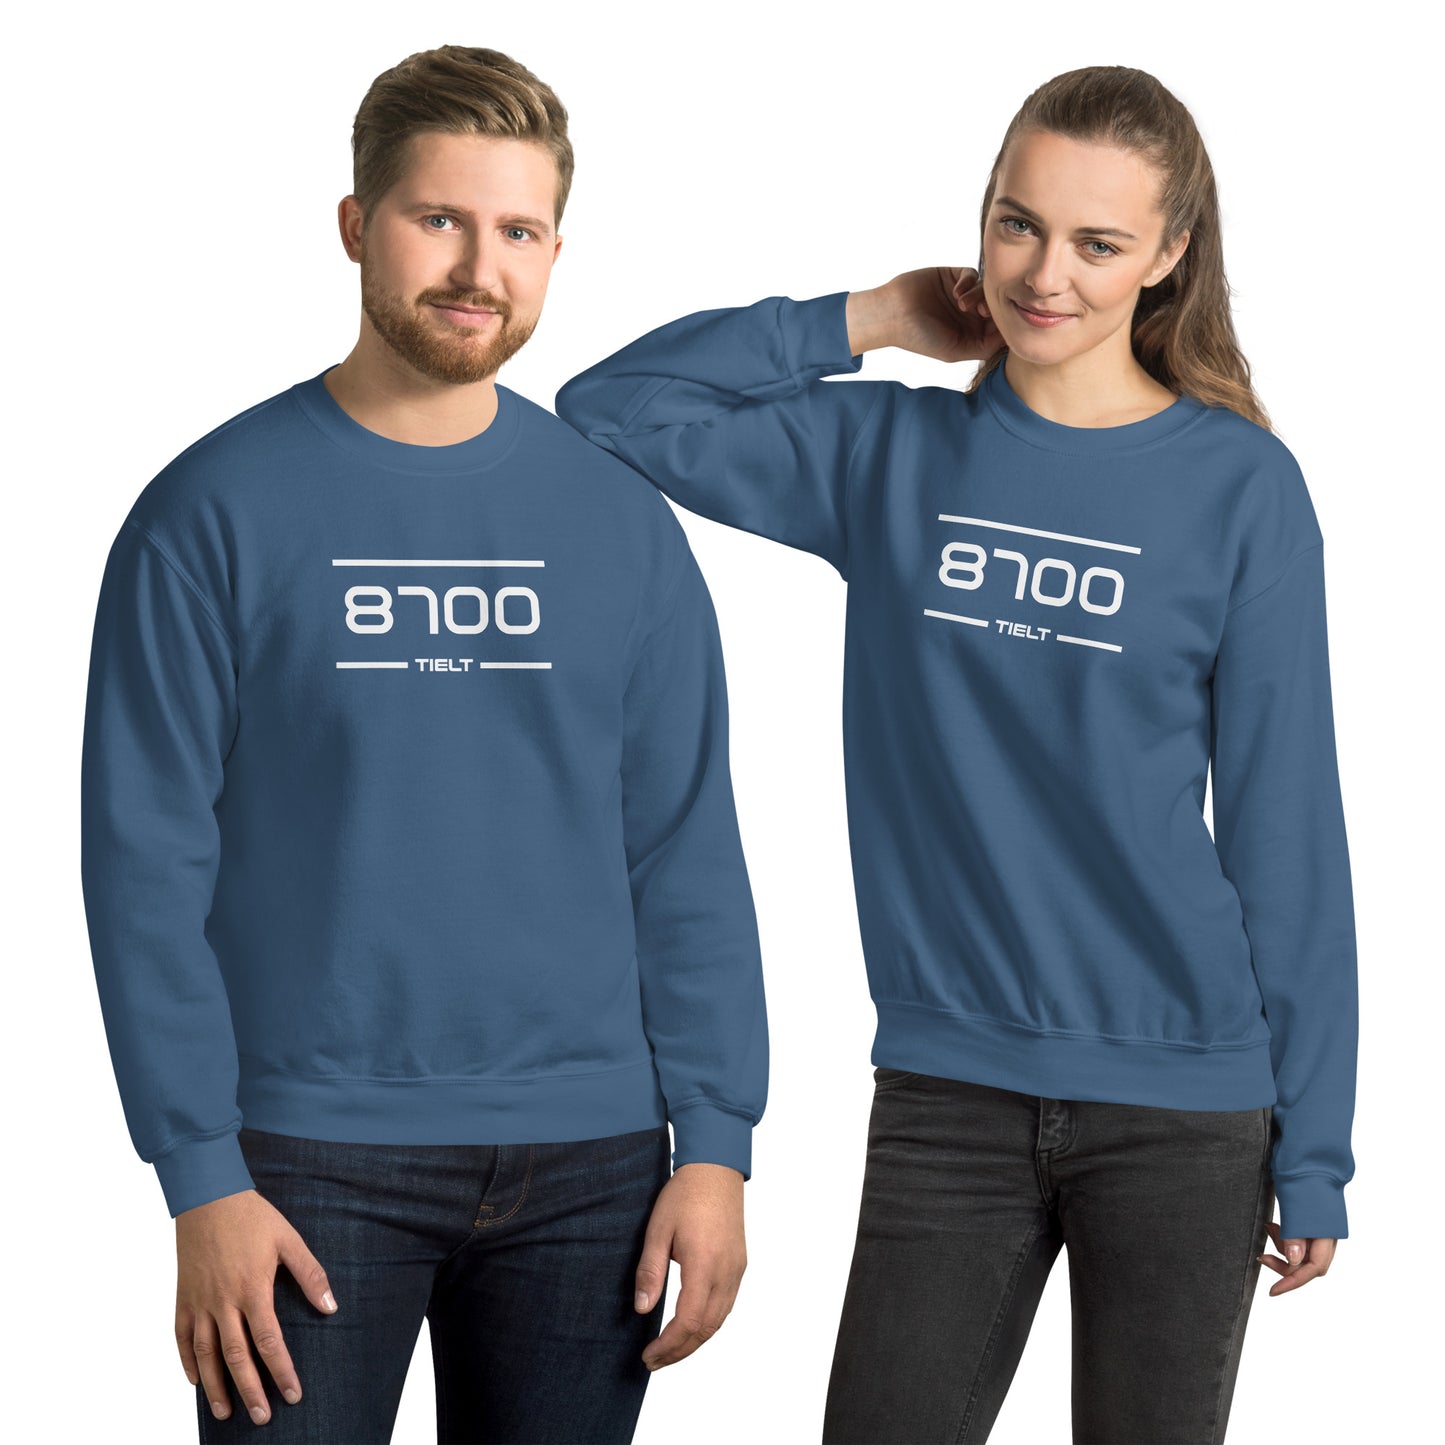 Sweater - 8700 - Tielt (M/V)